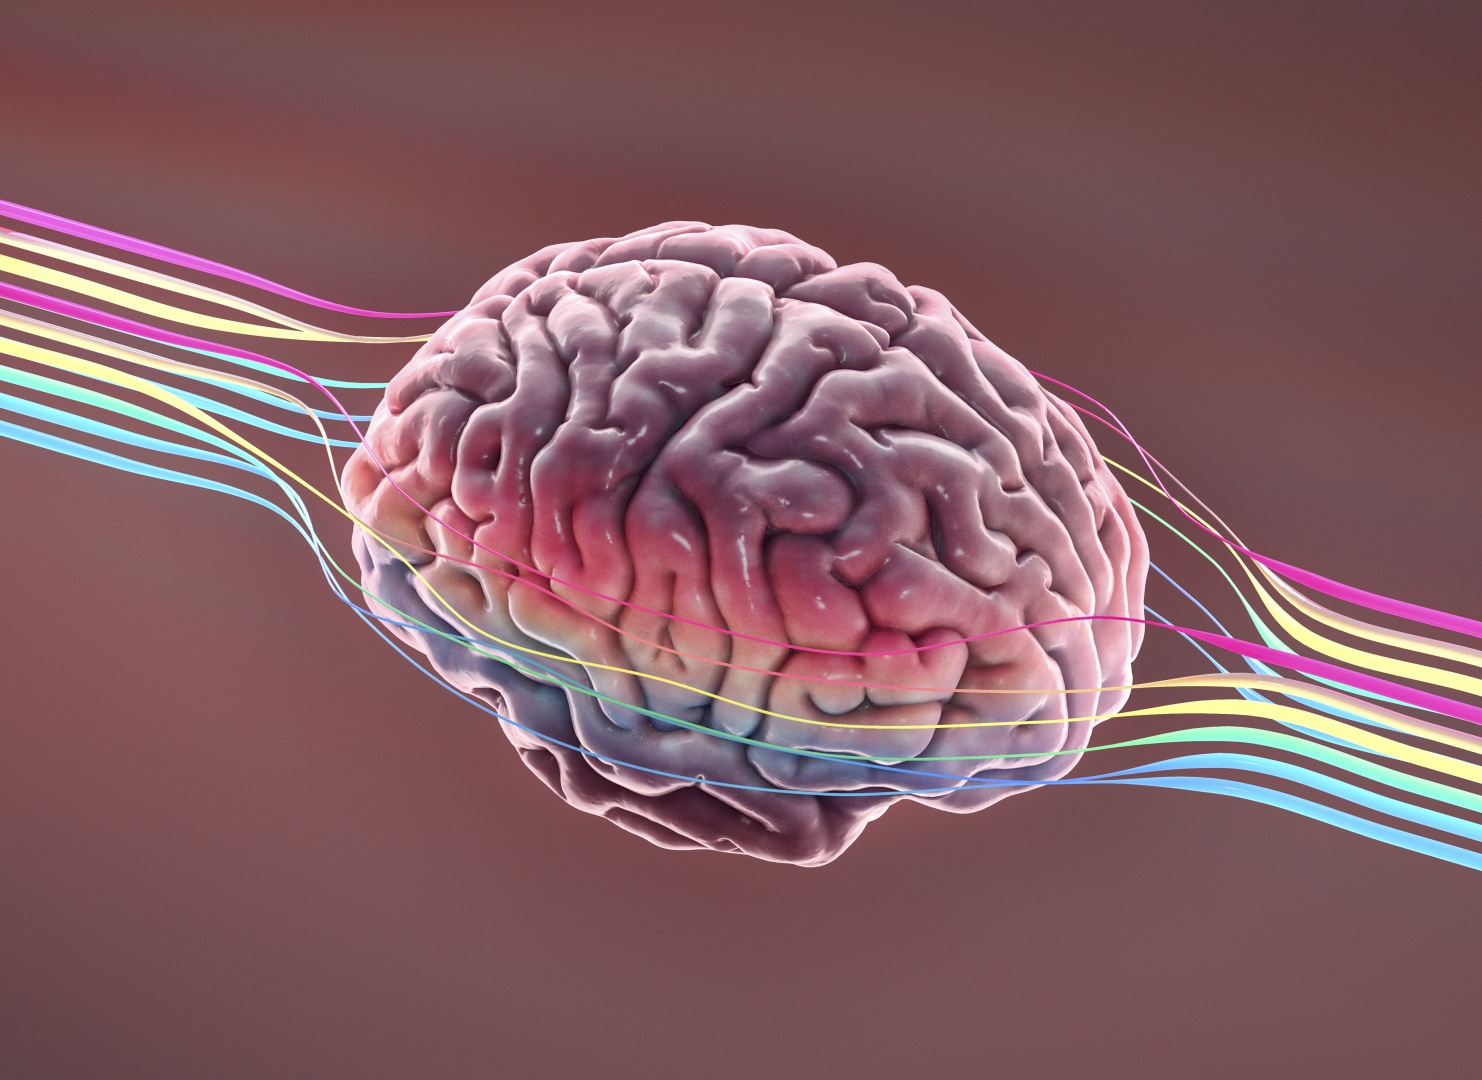 Ator Chris Hemsworth descobre chance de Alzheimer em teste genético